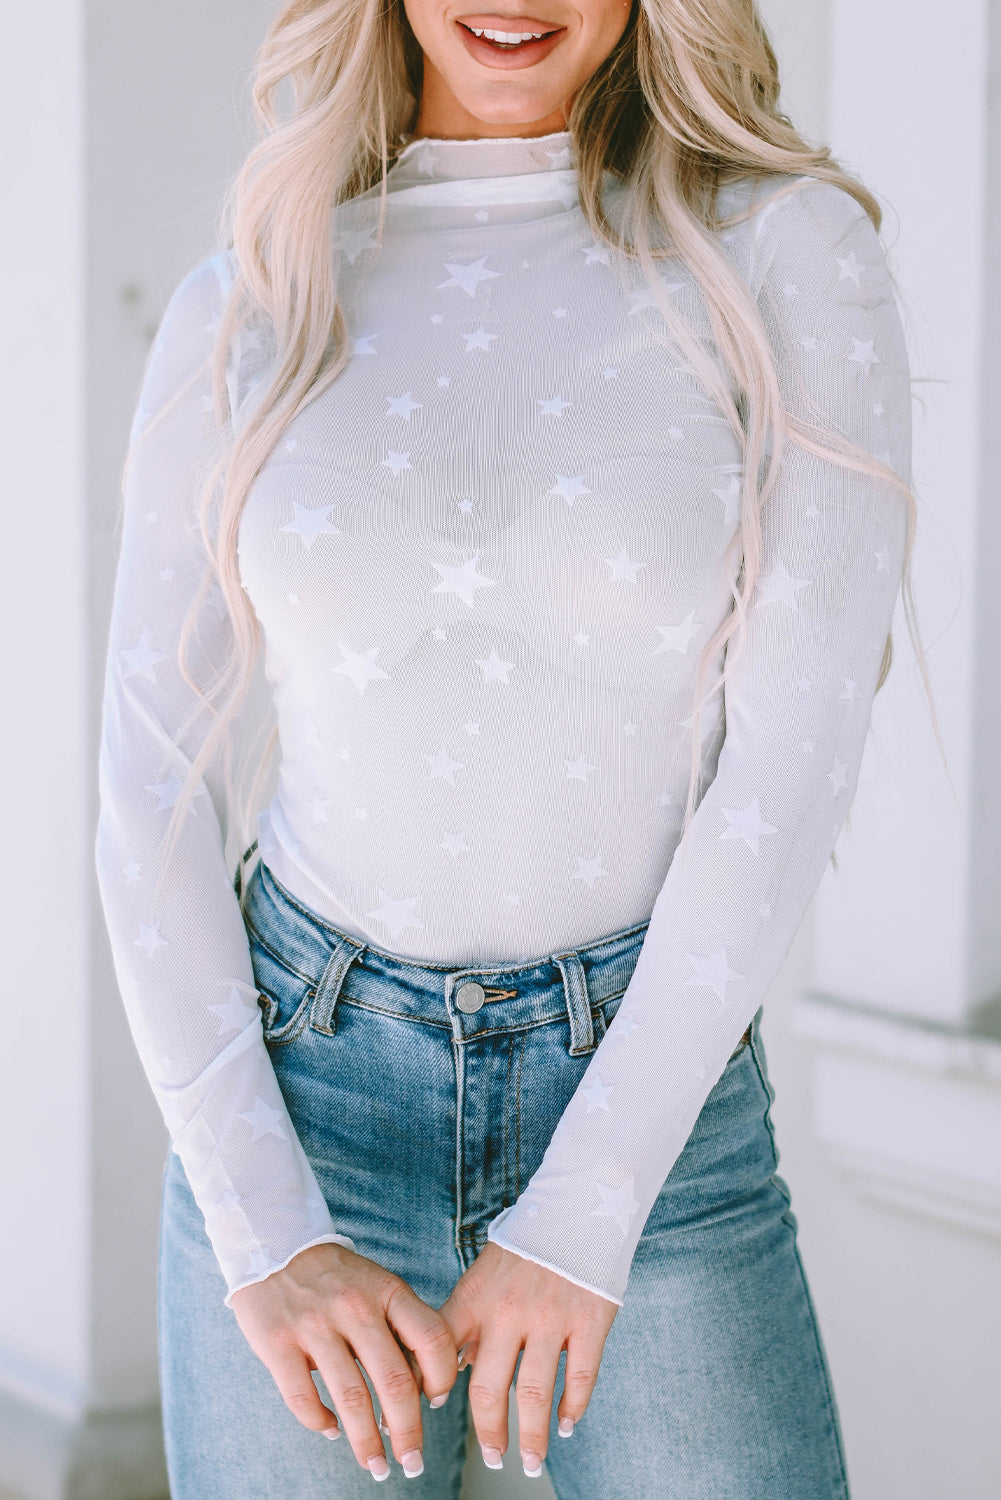 Prozorna mrežasta majica z dolgimi rokavi, okrašena z belo zvezdo